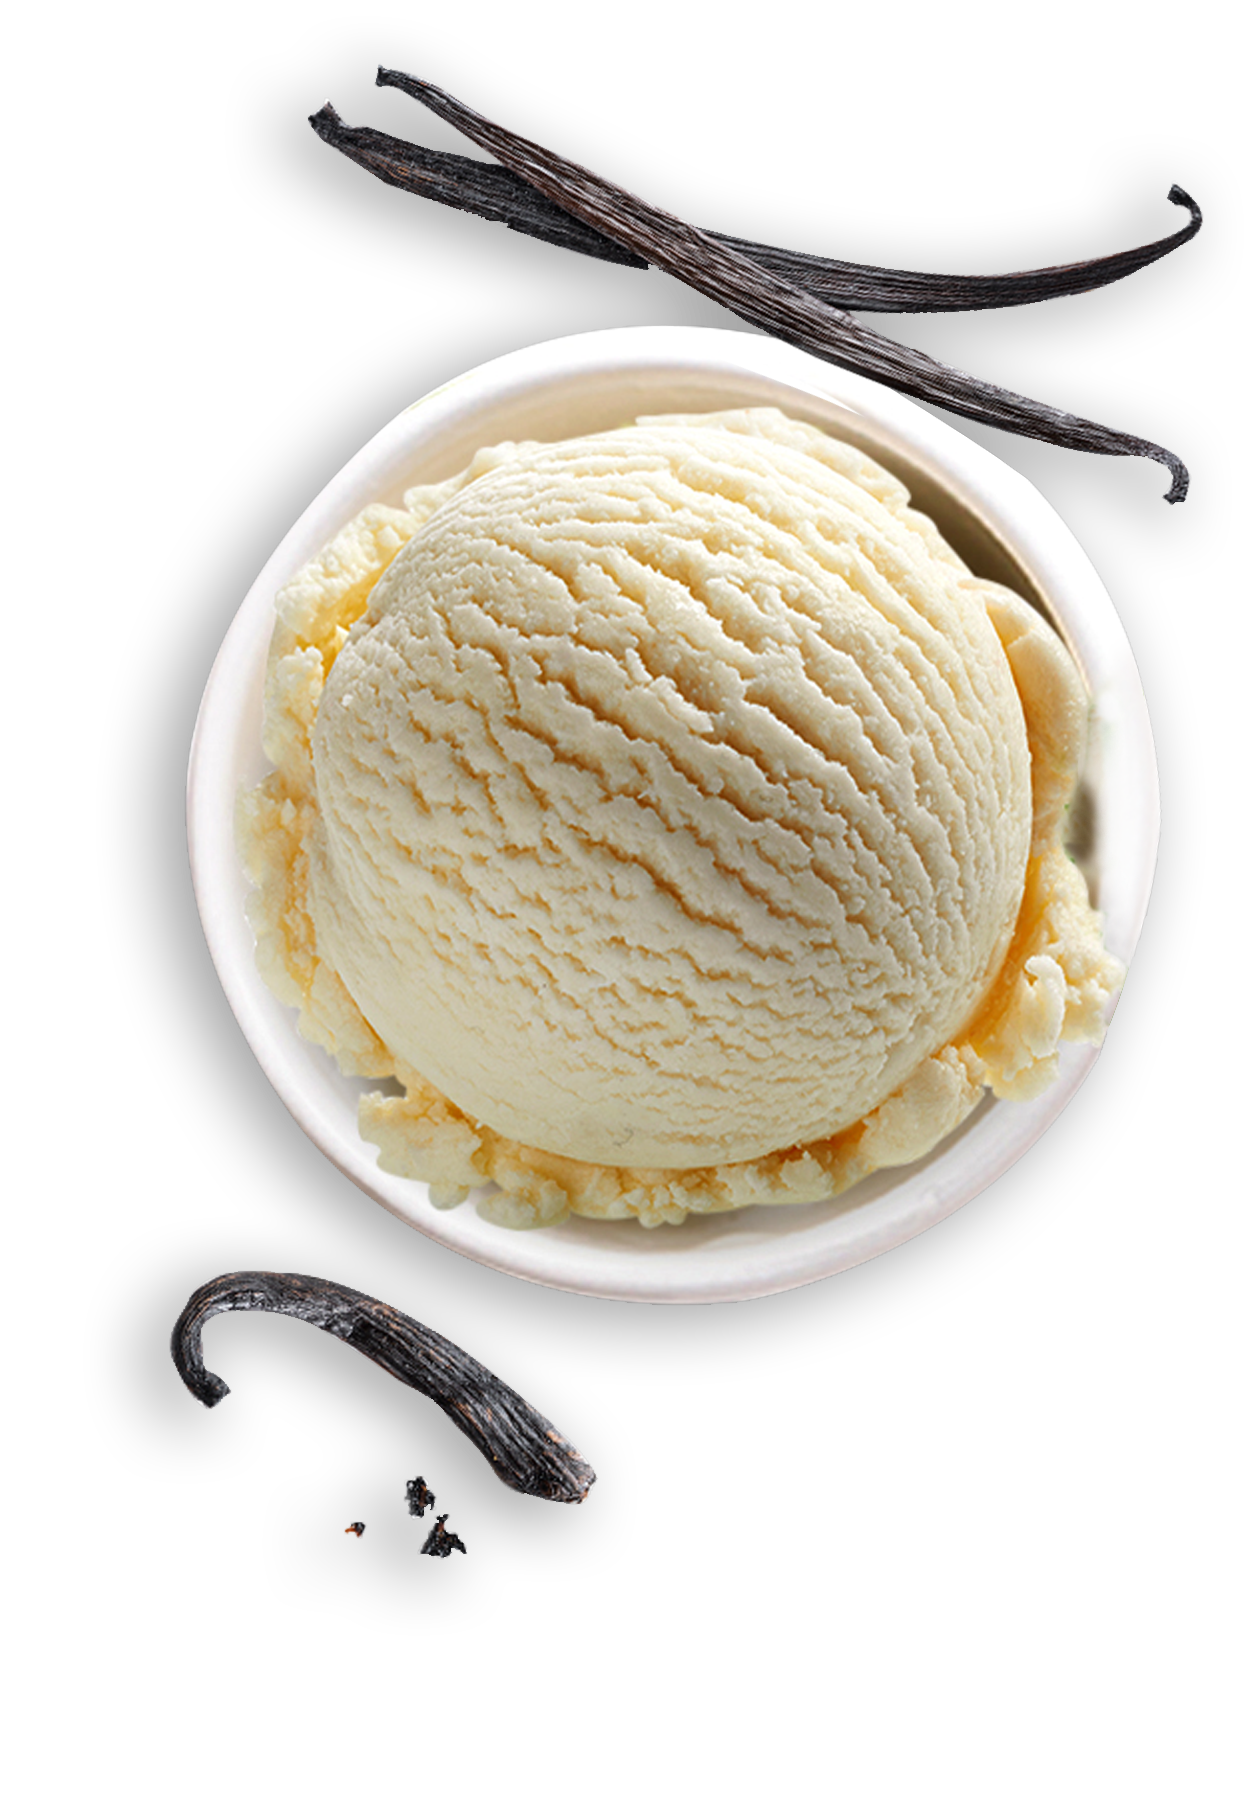 ibaco vanila flavoured ice cream